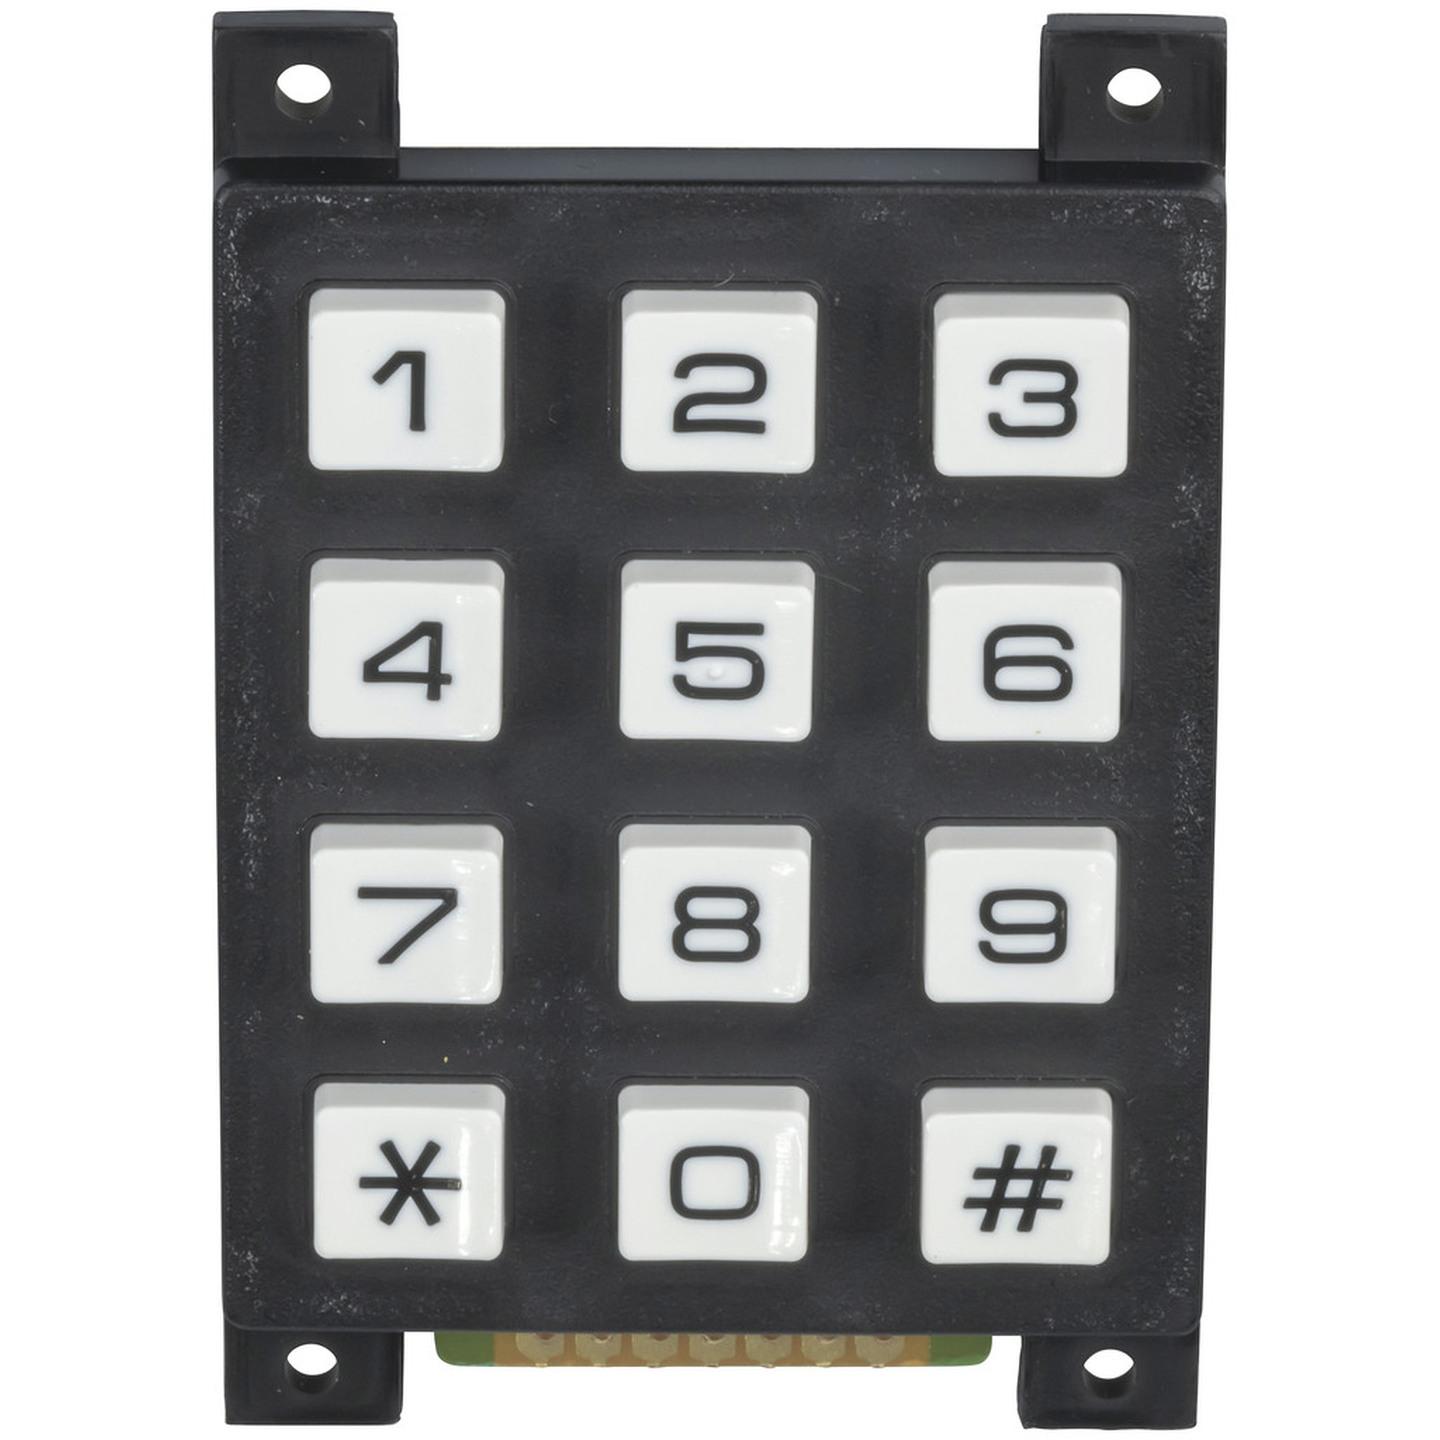 12 Key Numeric Keypad